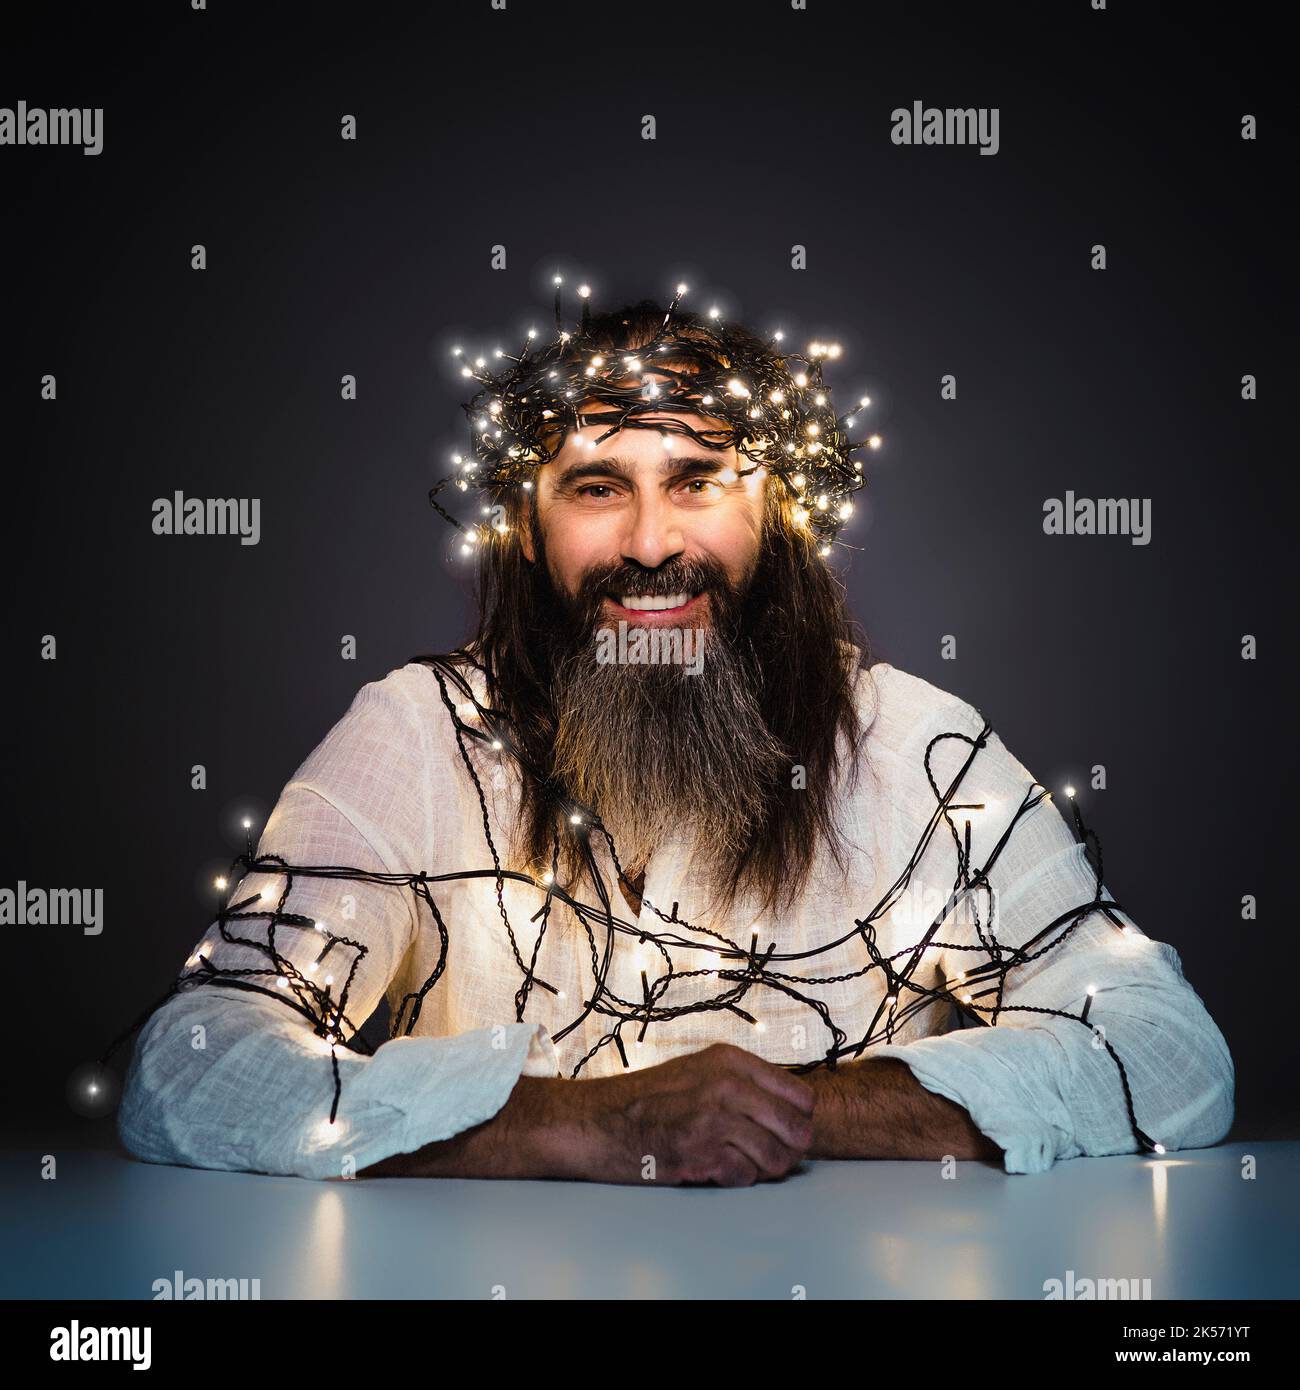 homme avec barbe et cheveux longs souriant avec des lumières de noël Banque D'Images